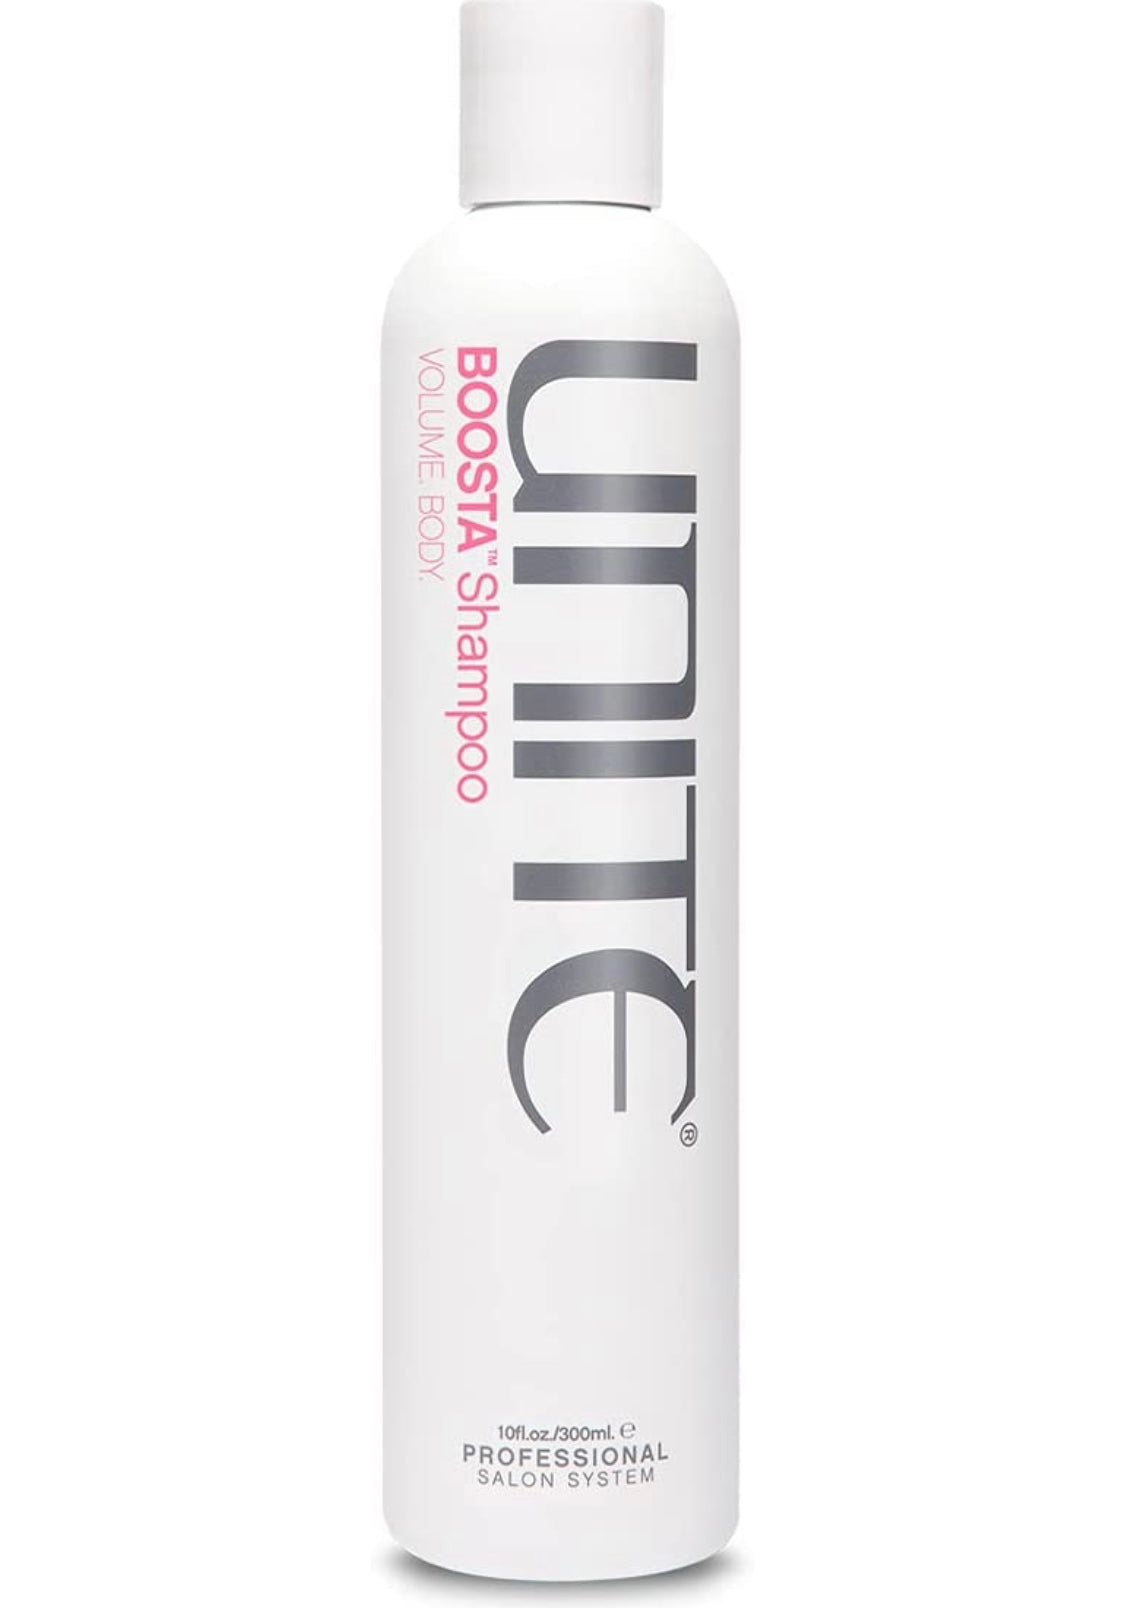 Unite - Boosta shampoo Volume body 10 fl. oz./ 300 ml